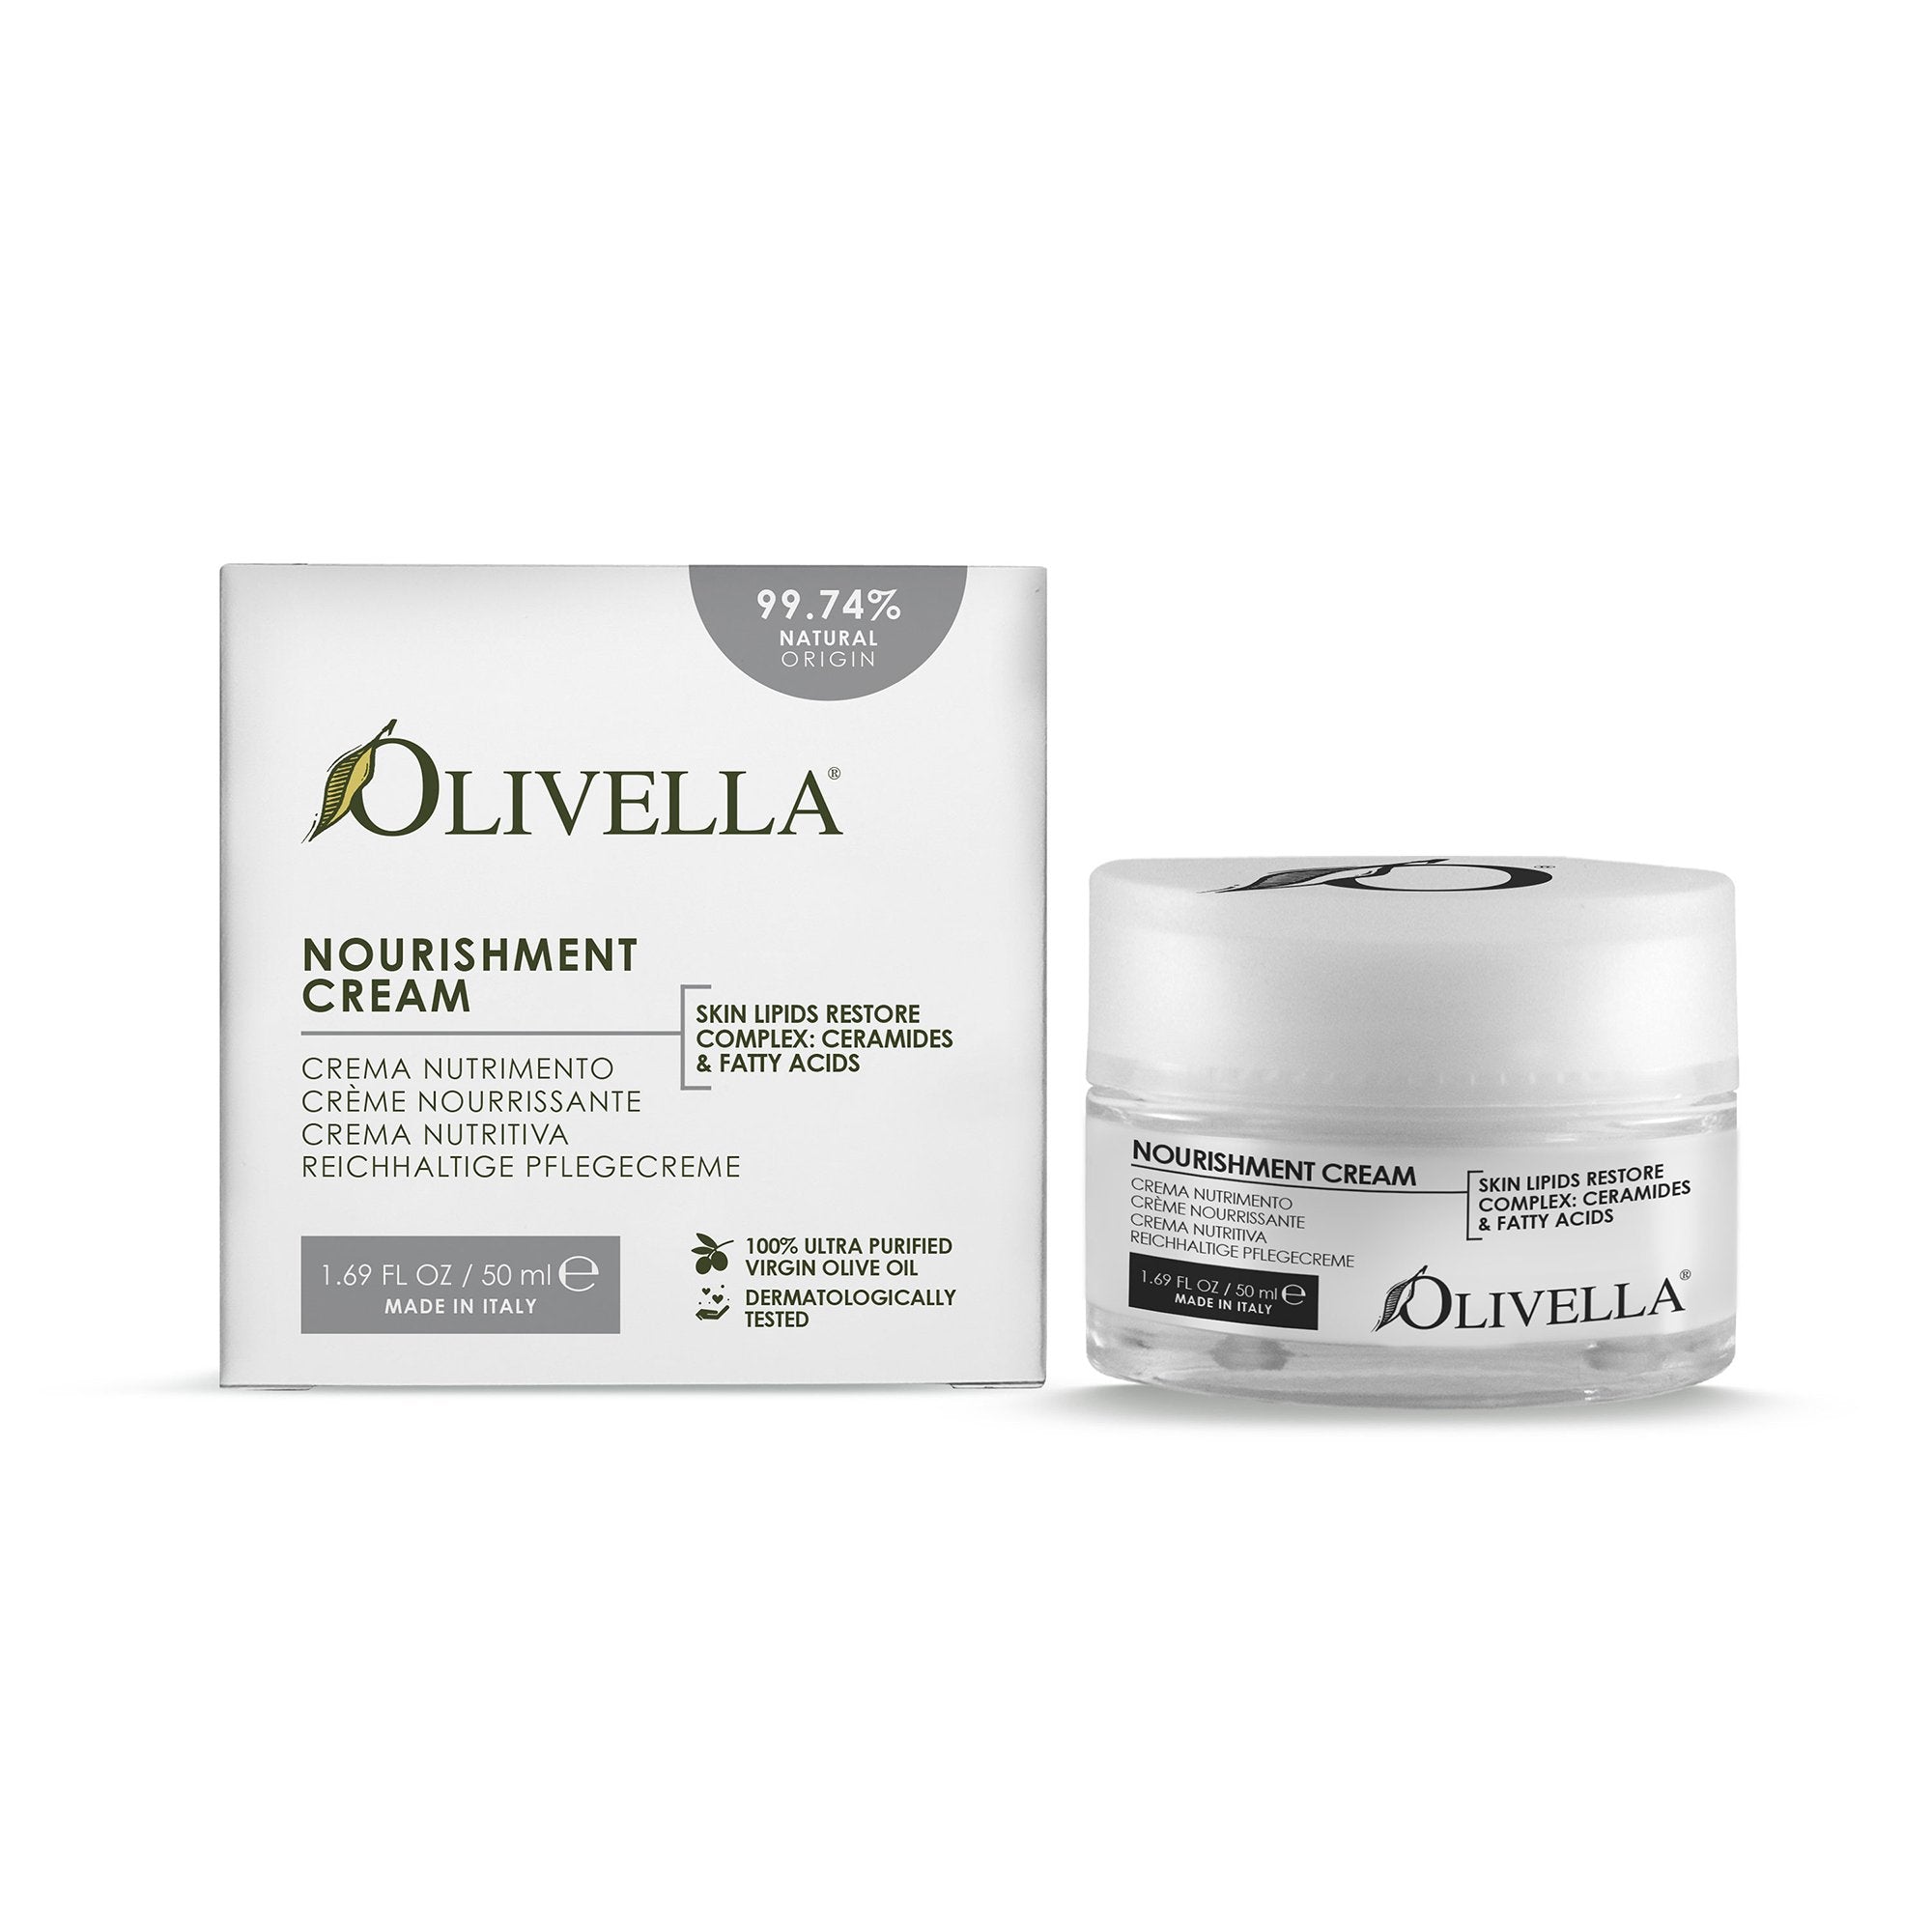 Olivella Nourishment Cream 1.69 Oz - Olivella